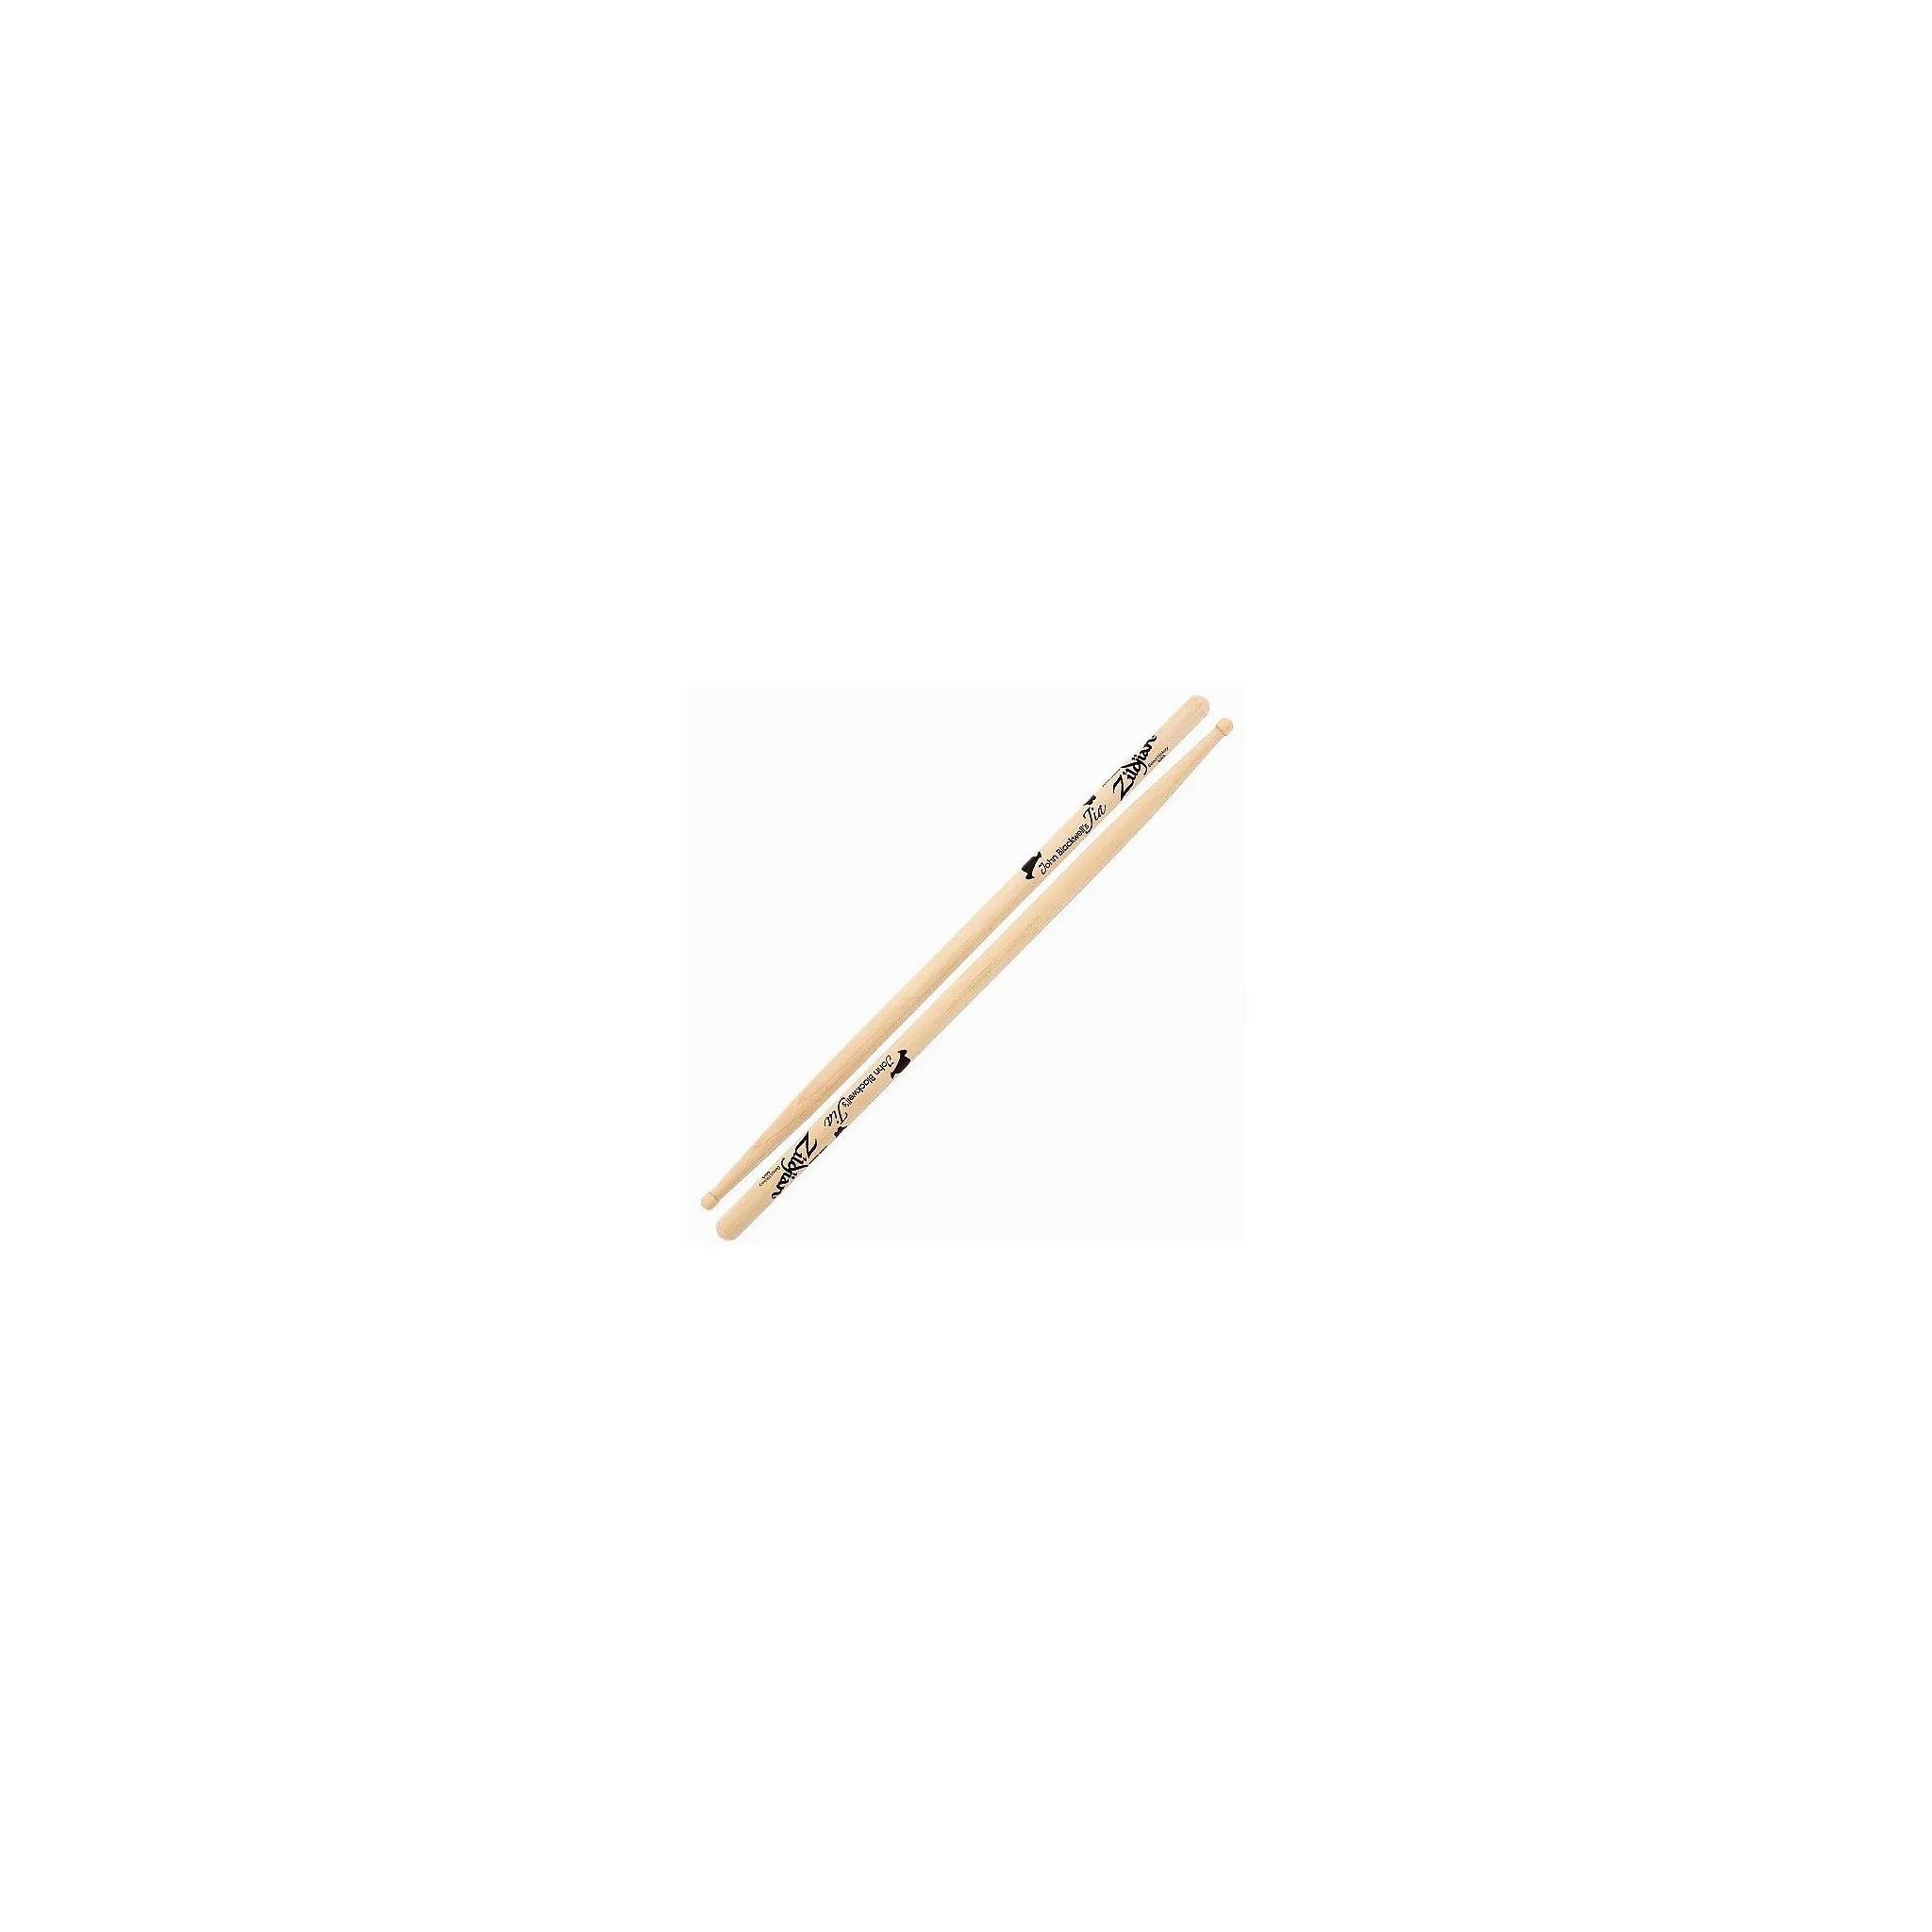 Zildjian John Blackwell Jia signature sticks